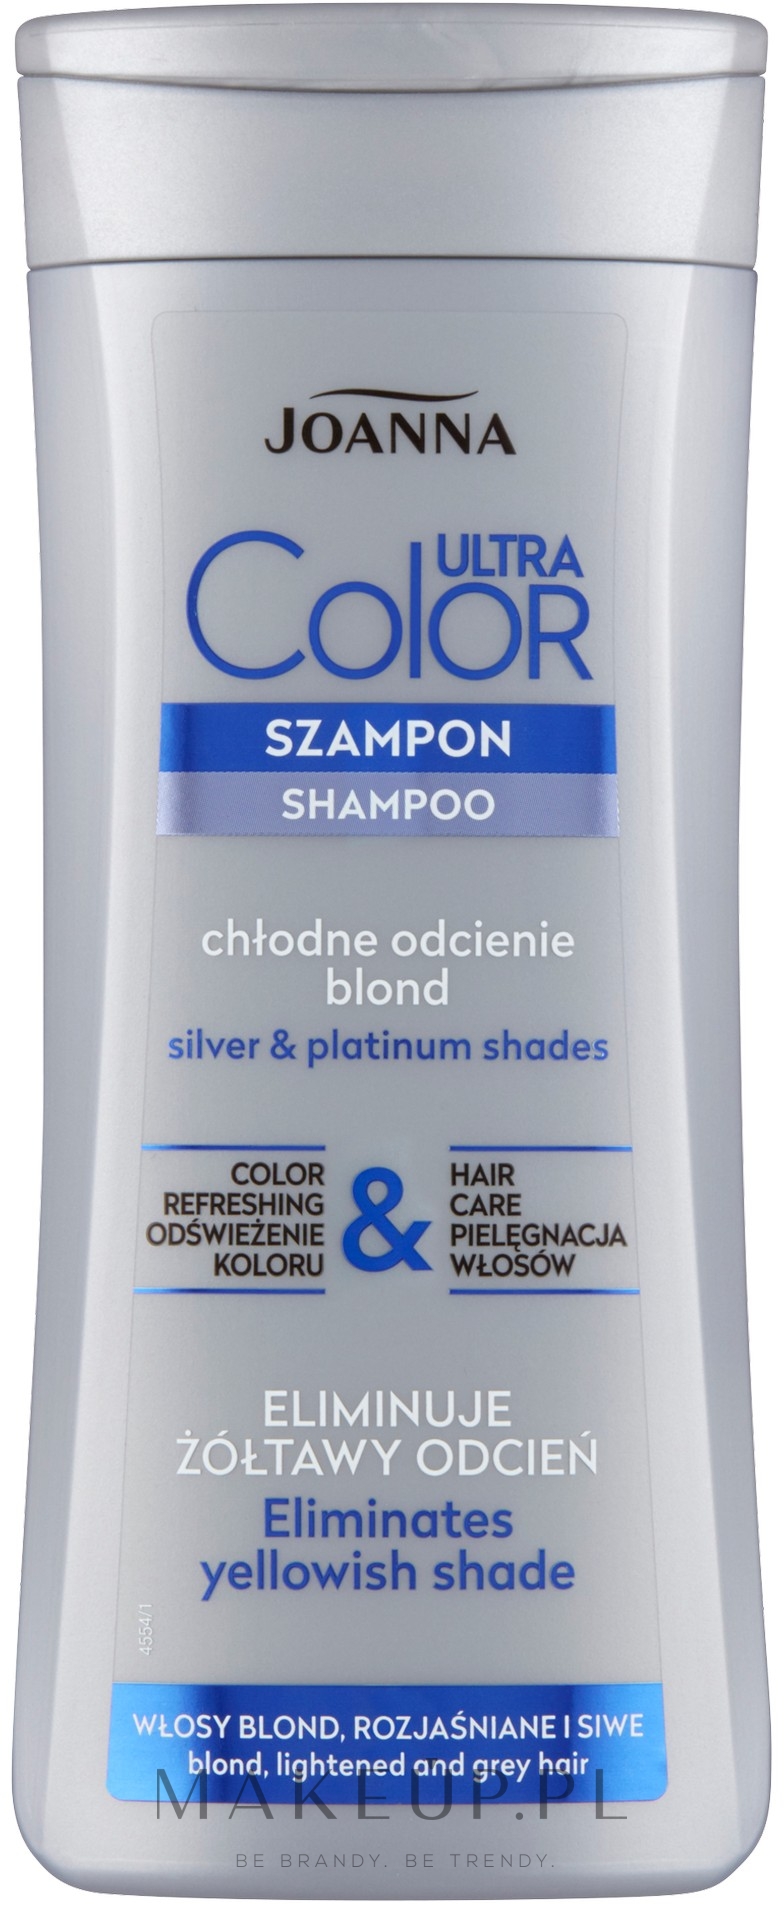 szampon do włosów rozjaśnionych siwych i blond